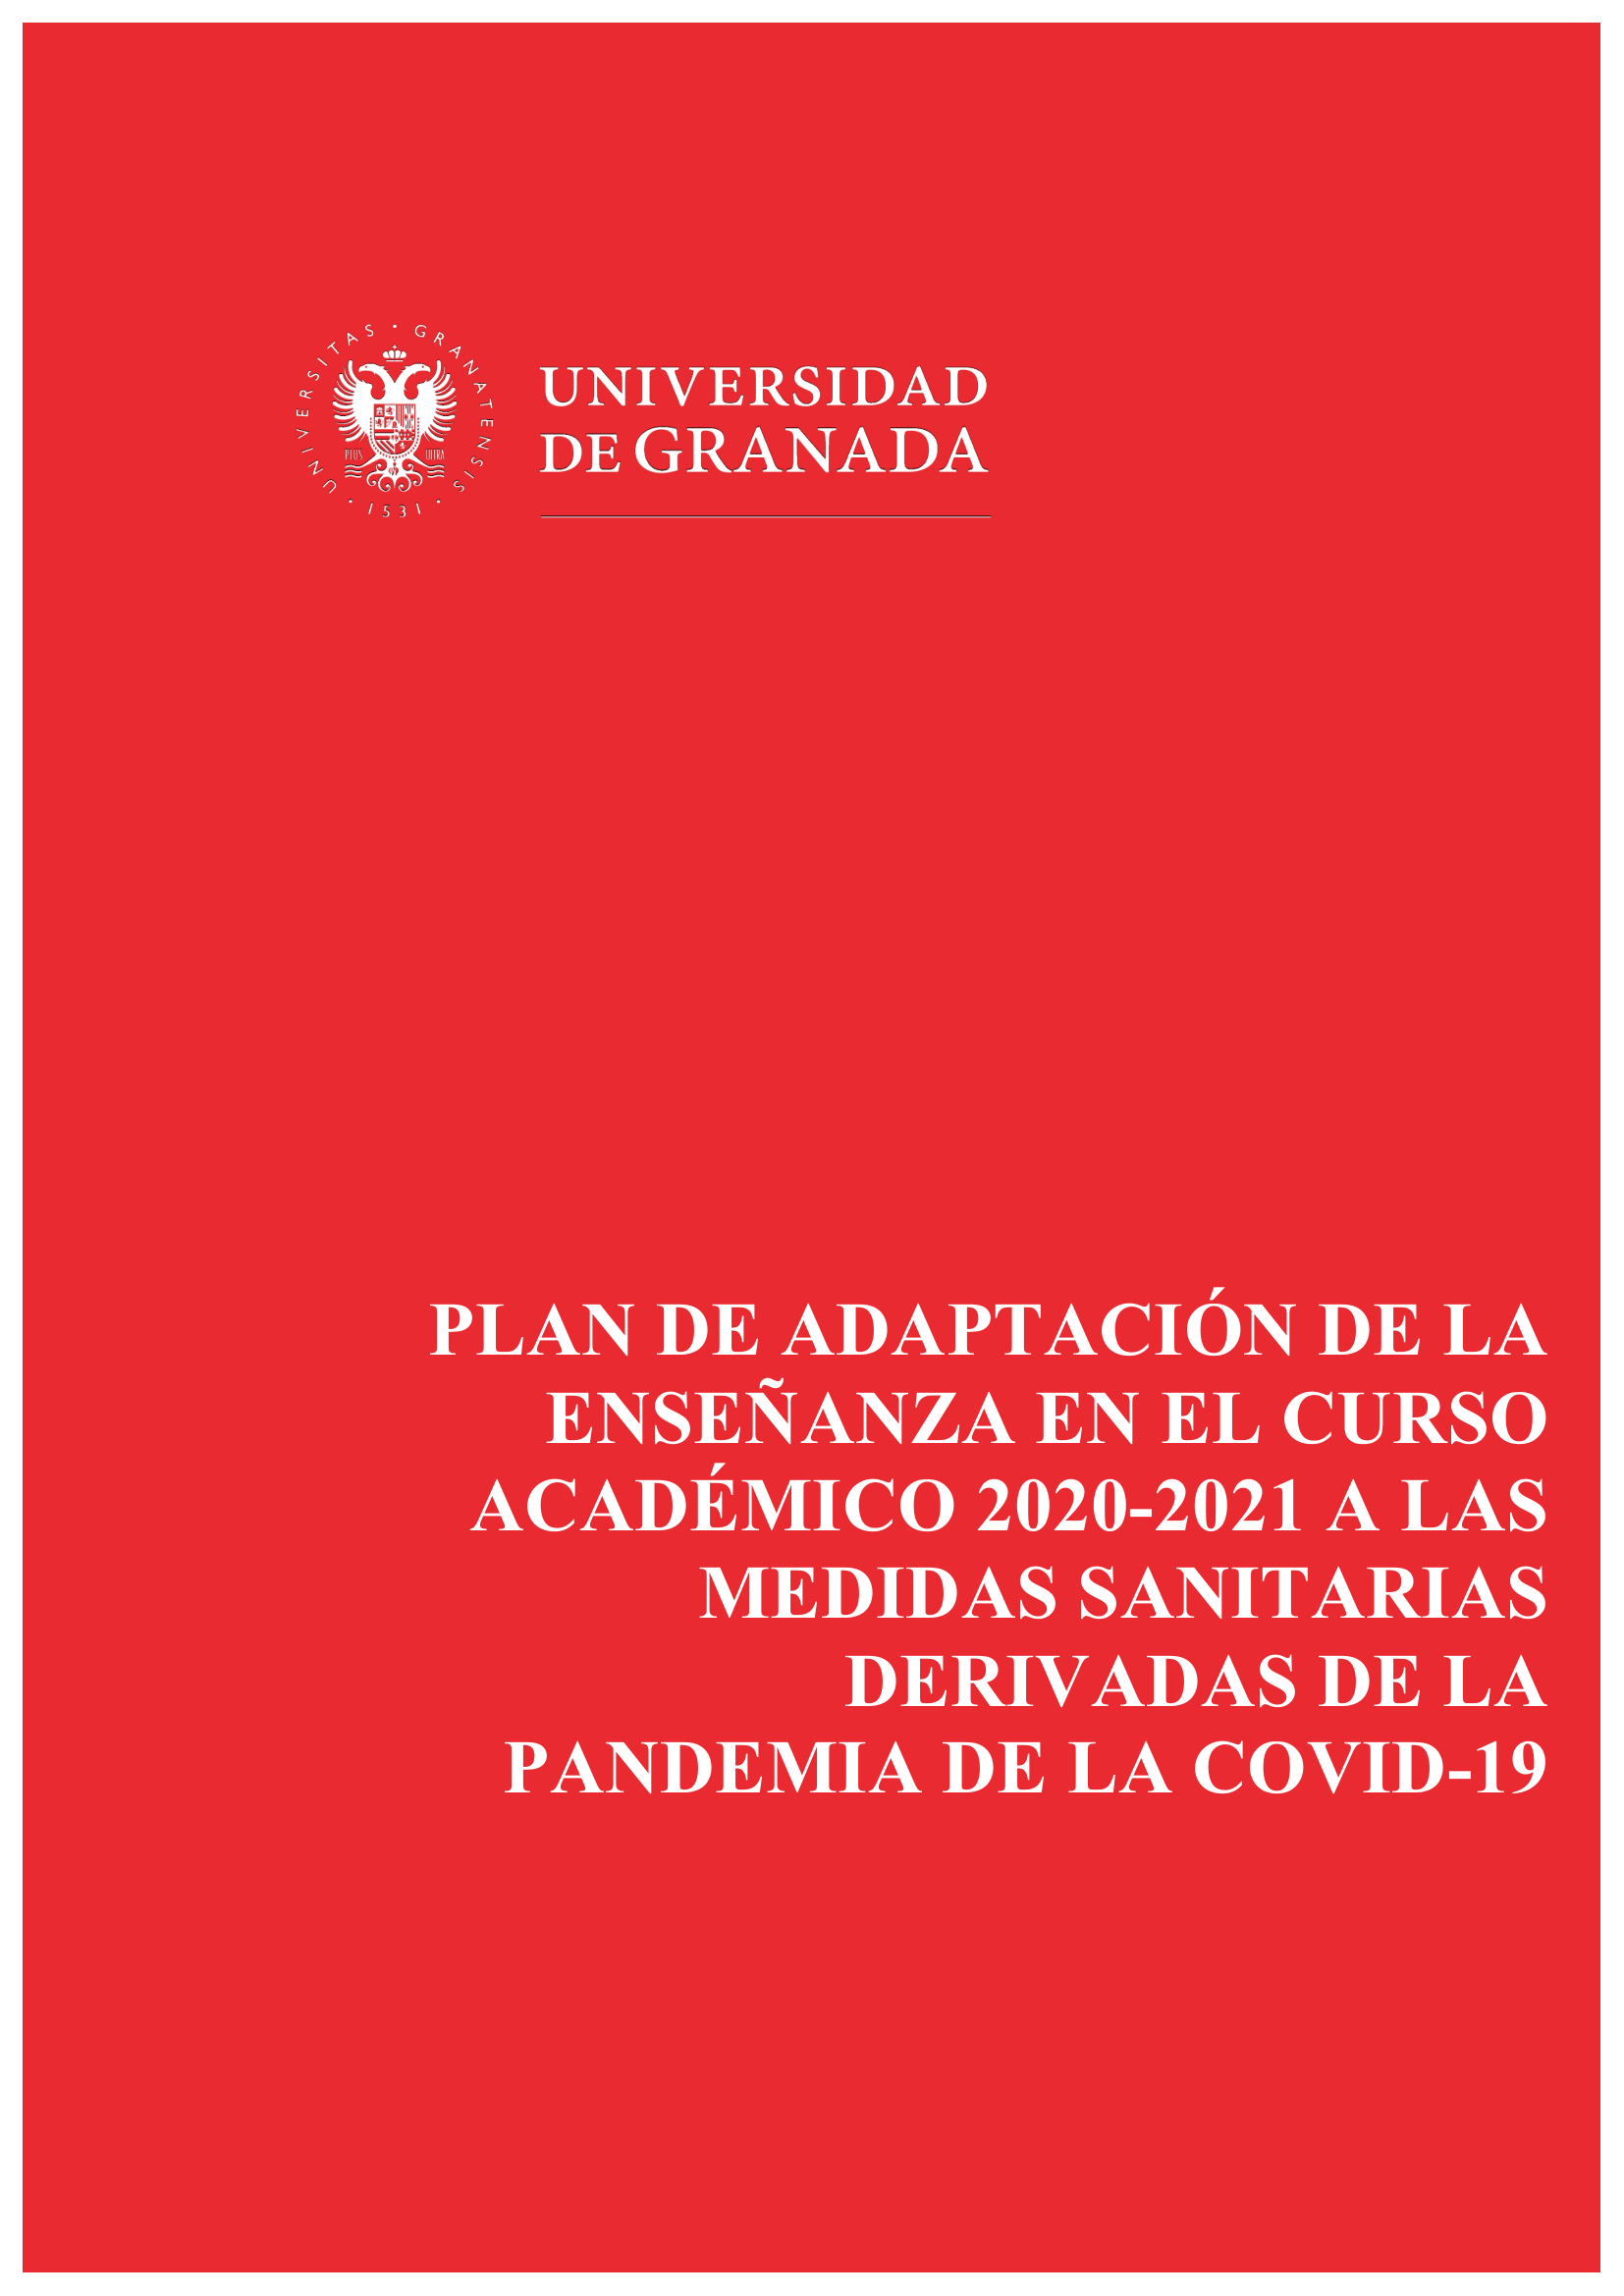 Plan de adaptación de la enseñanza en el curso académico 2020-2021 a las medidas sanitarias derivadas de la pandemia de la COVID-19